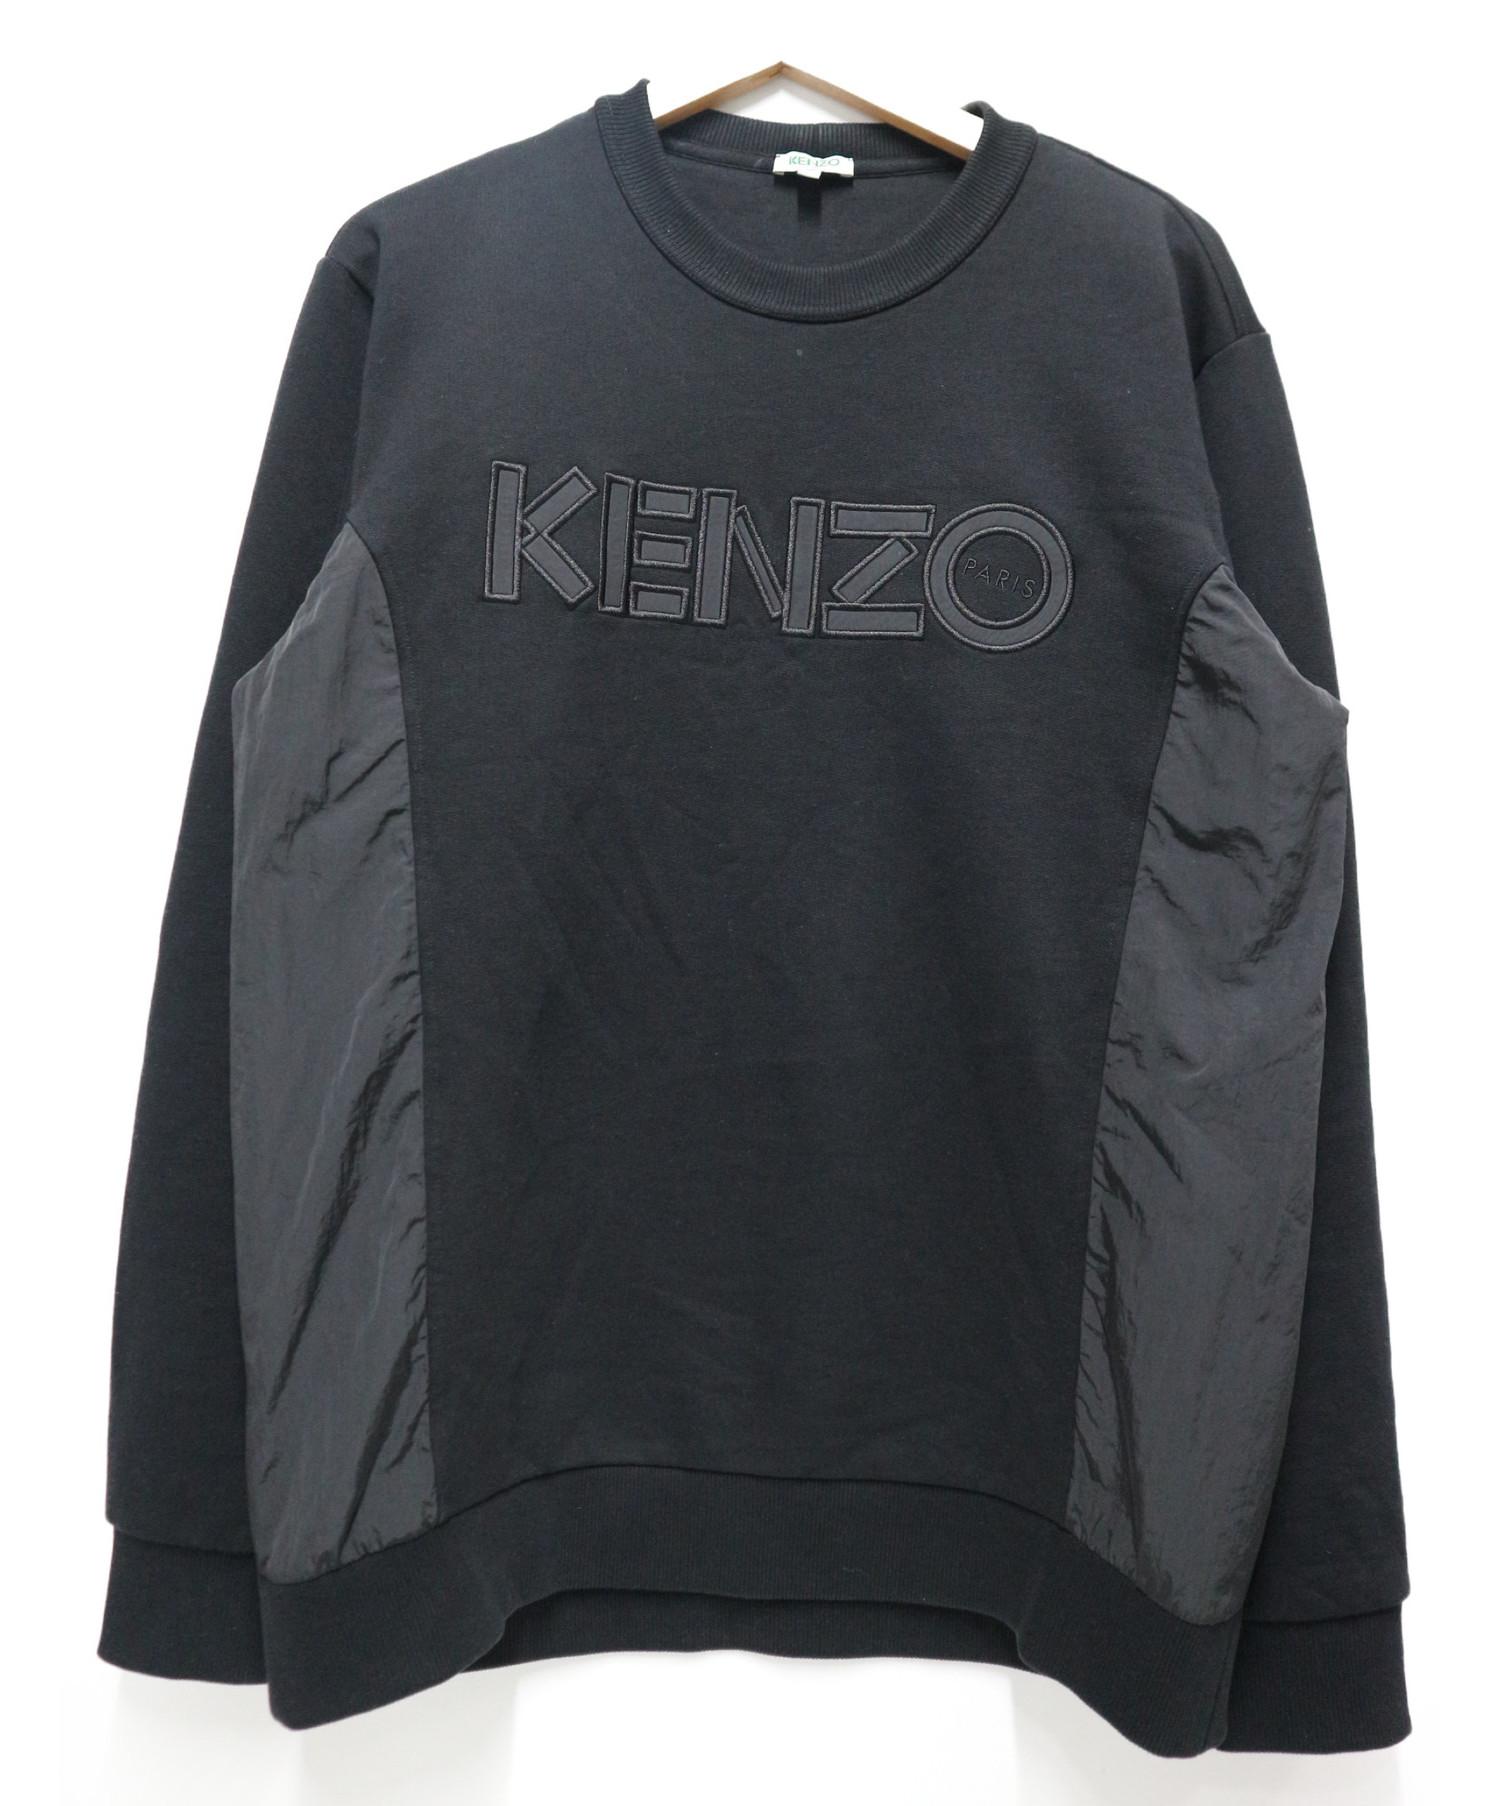 中古 古着通販 Kenzo ケンゾー ロゴアプリケットスウェット サイズ M F955sw1924mc Paris Dual Fabric Sweatshirt ブランド 古着通販 トレファク公式 Trefac Fashion